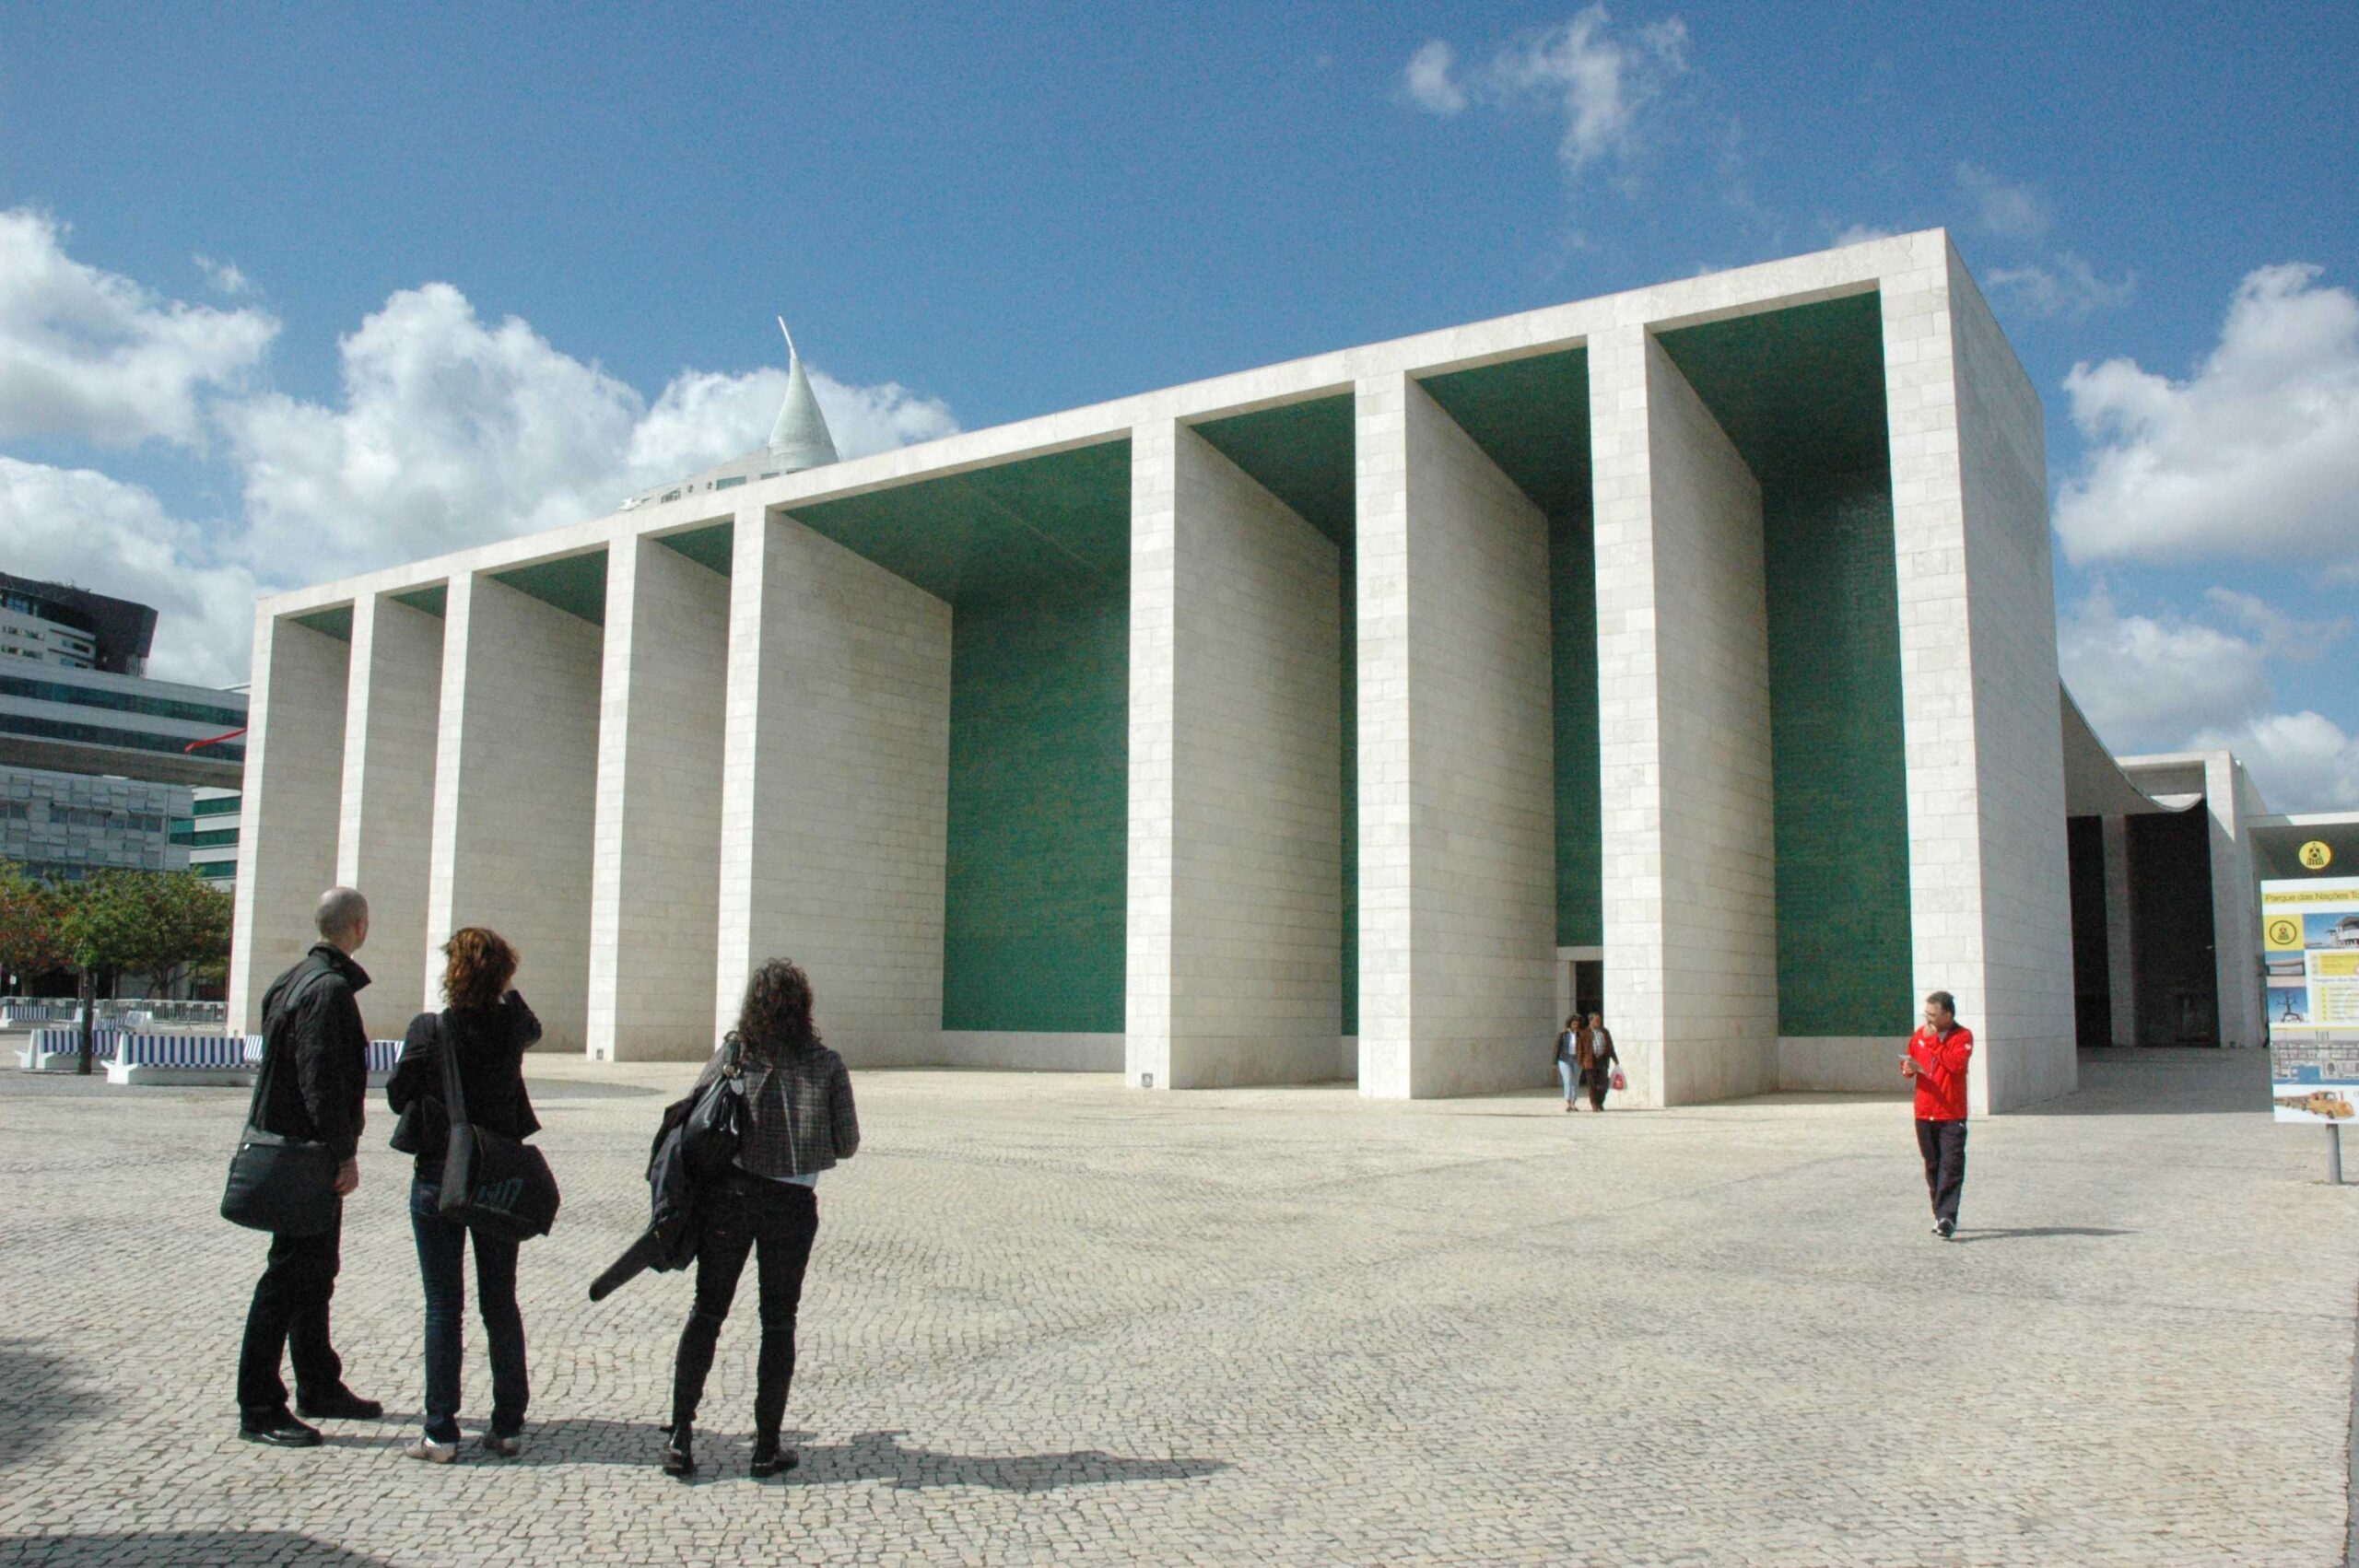 Portugese Pavilion